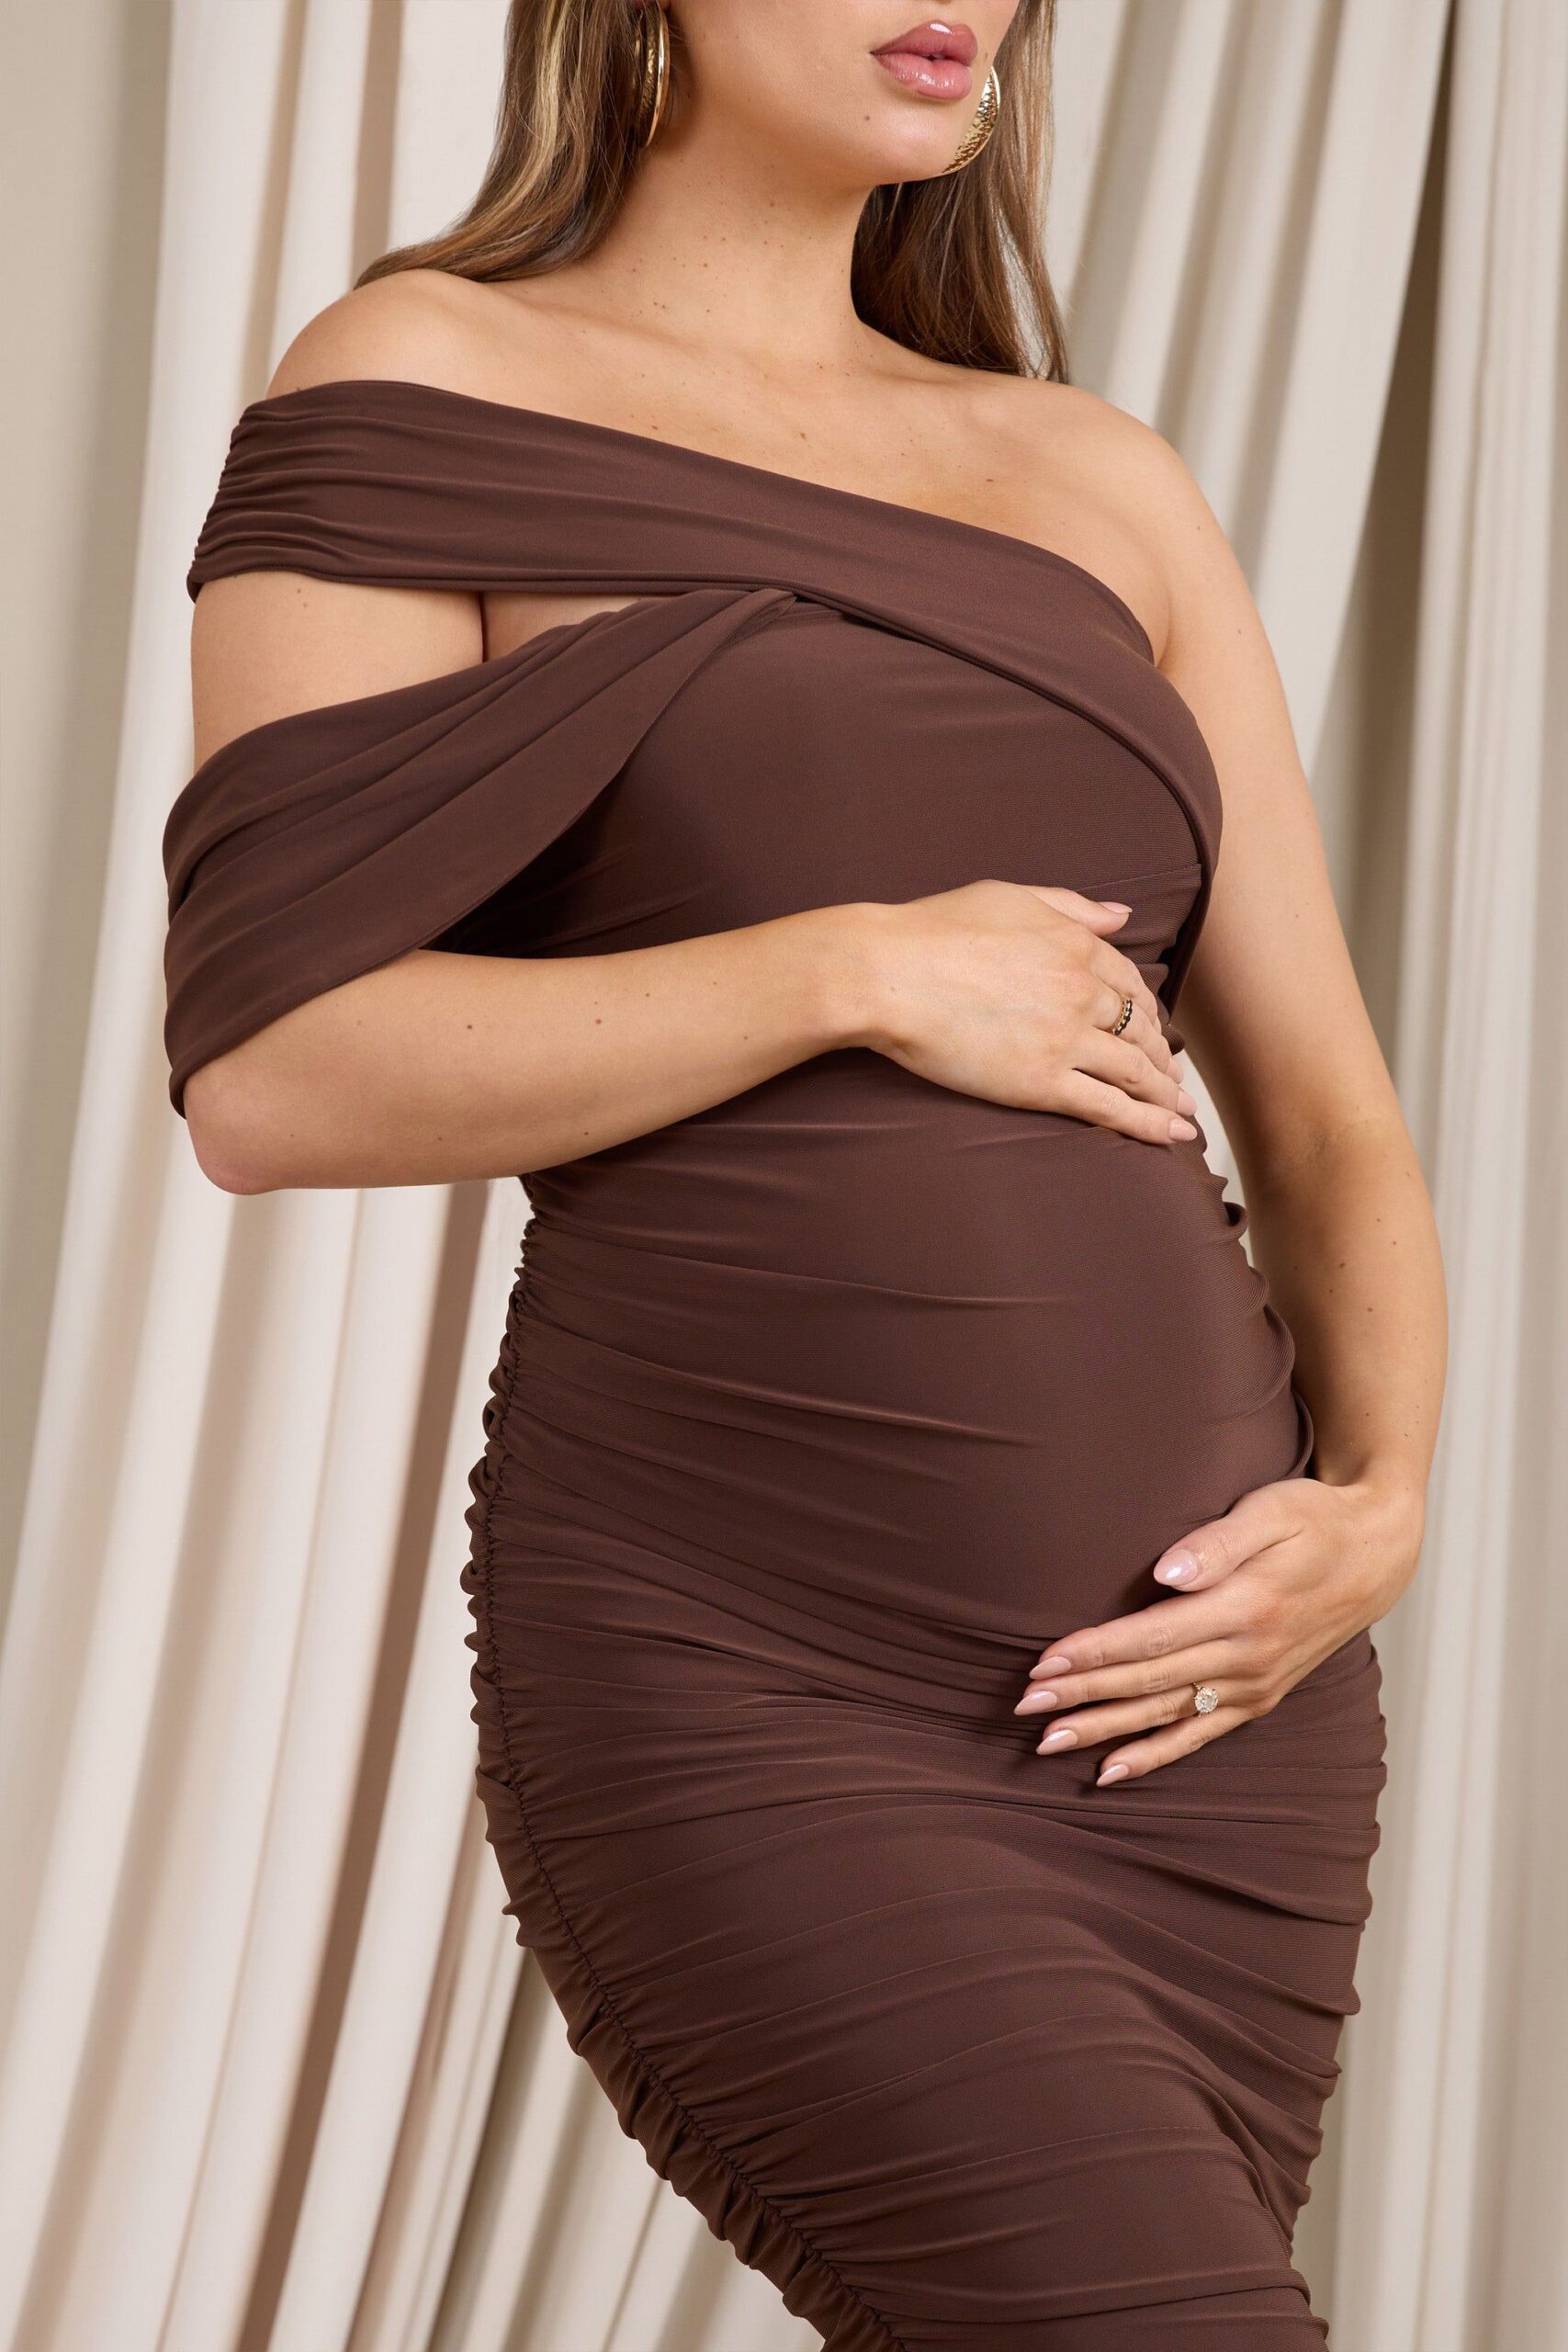  Info On Maternity Dresses For Baby Shower